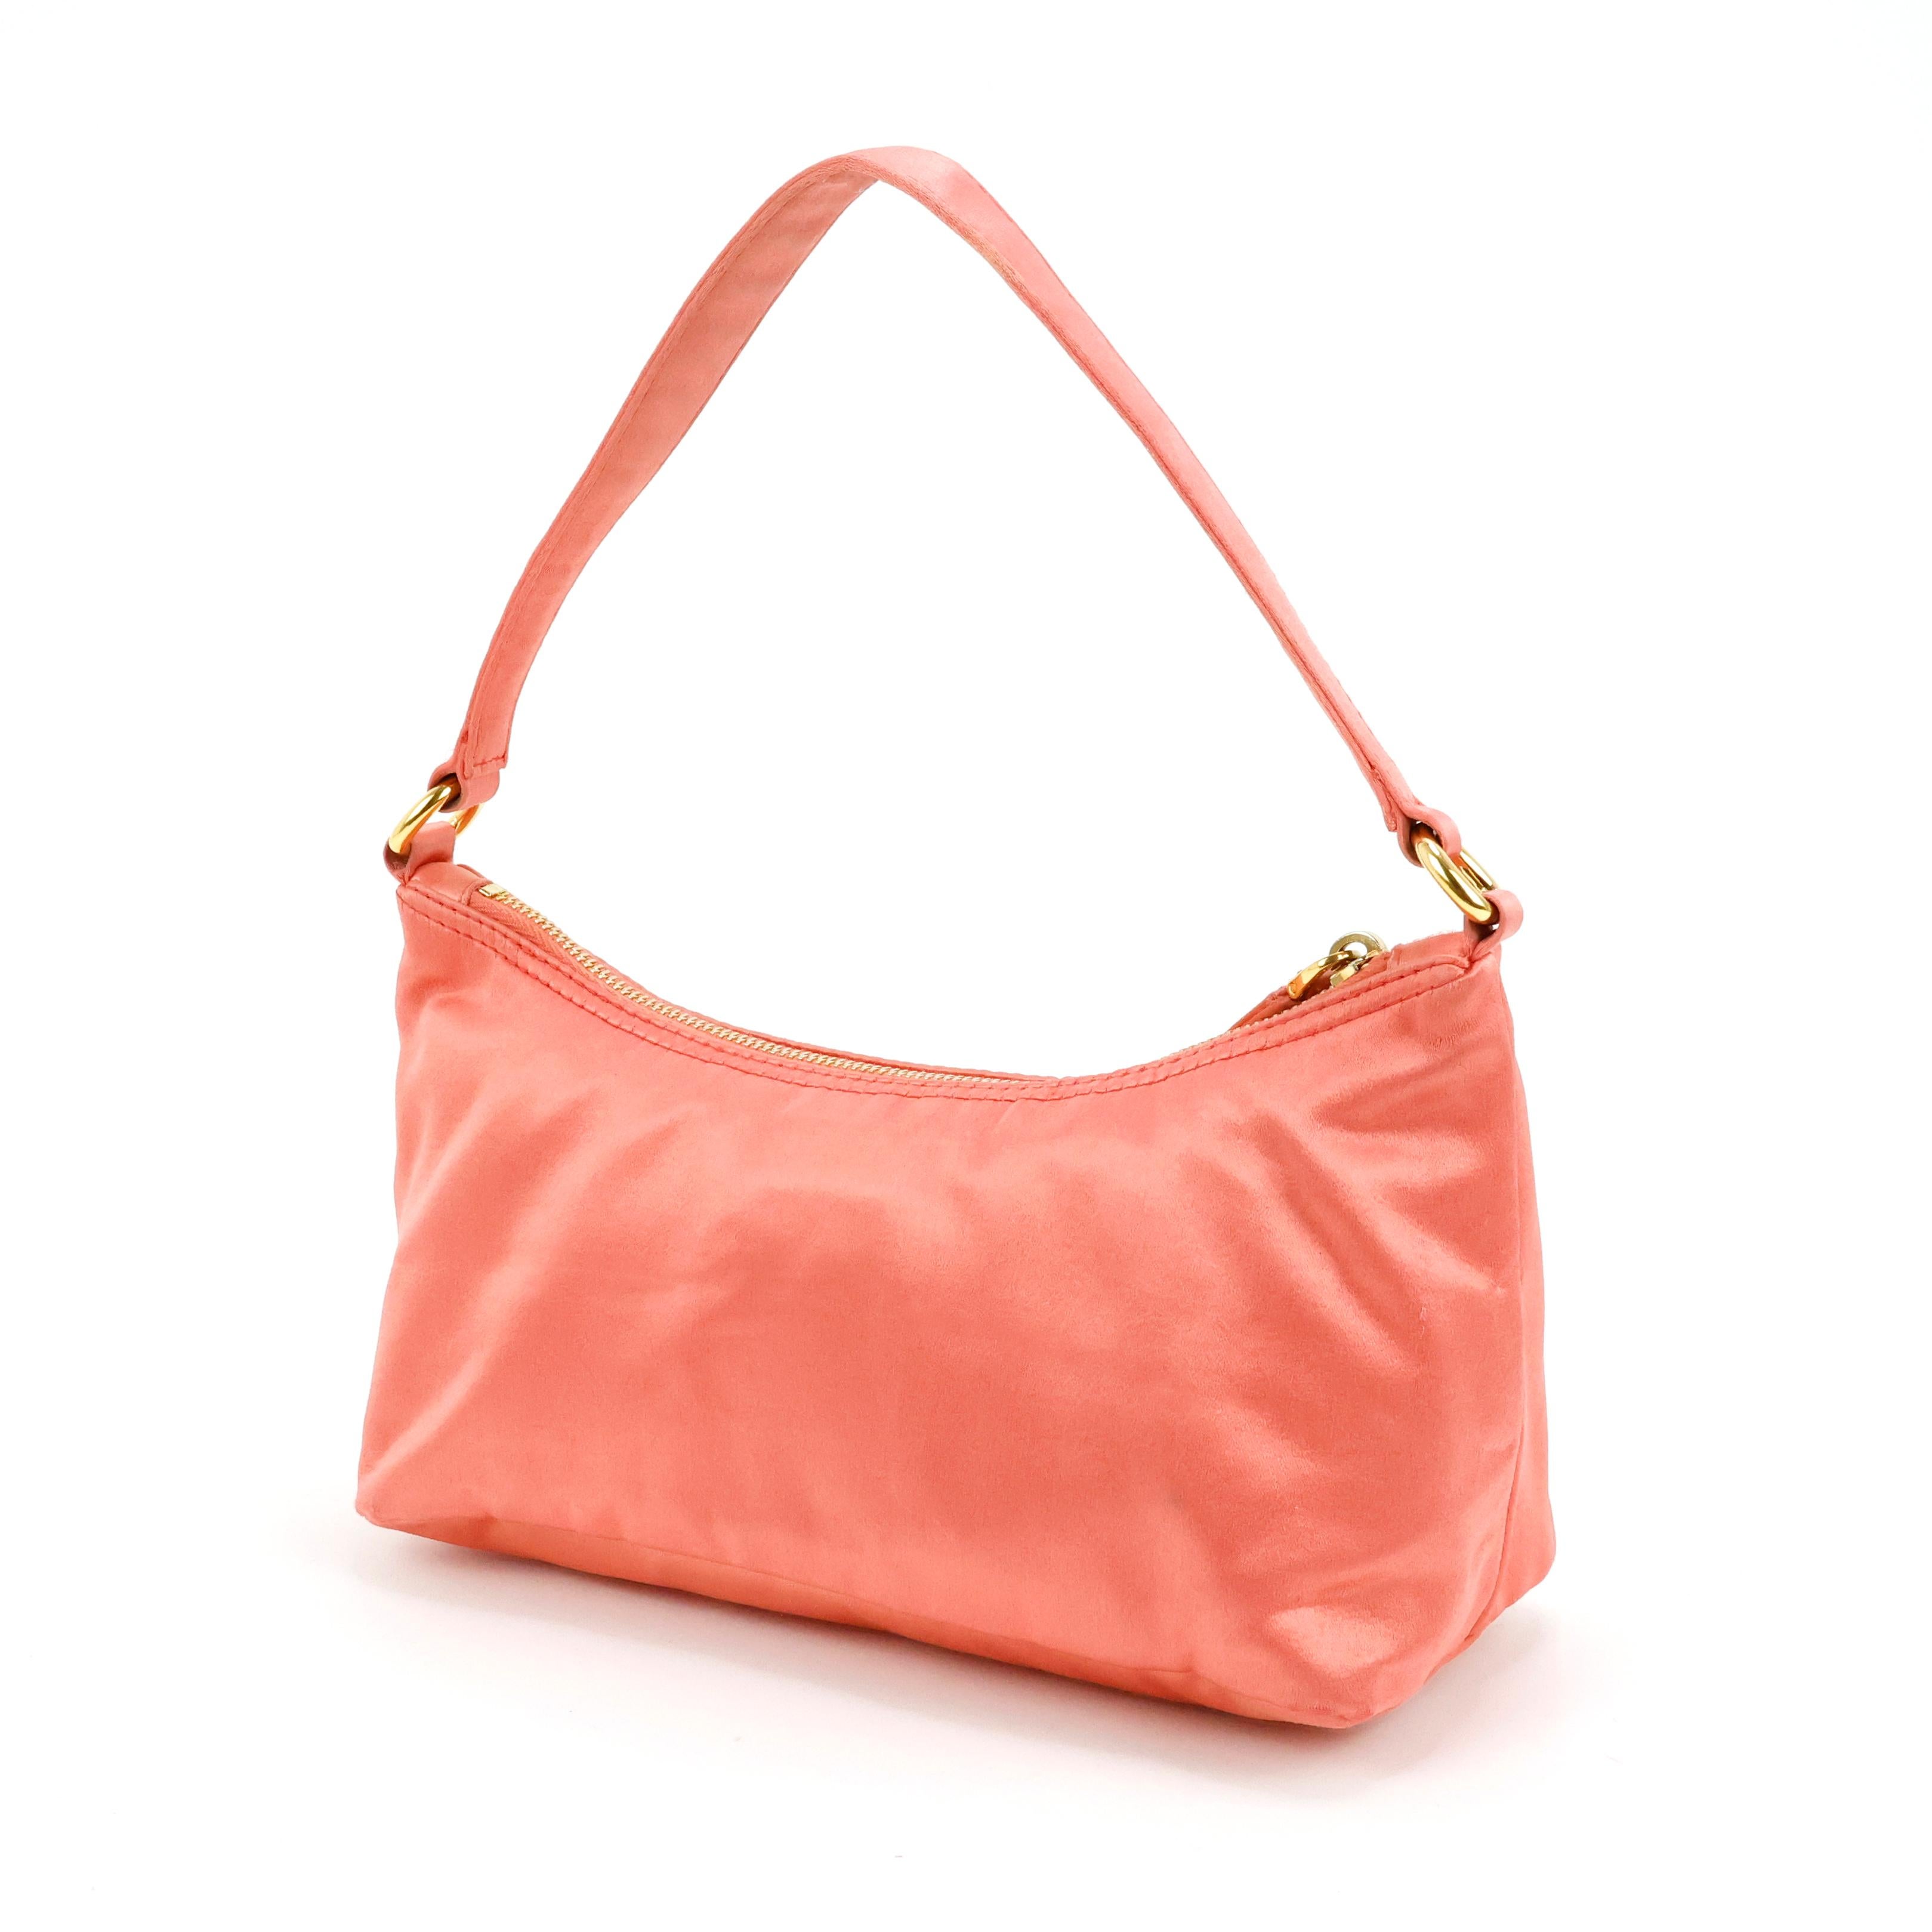 Prada Tasche in Seide Farbe Koralle rosa, Gold Hardware.

Bedingung:
Gut/sehr gut, zu beachten: leichte Flecken und gezogene Fäden auf der Seide.

Verpackung/Zubehör:
Staubbeutel.

Abmessungen:
24cm x 10cm x 10cm